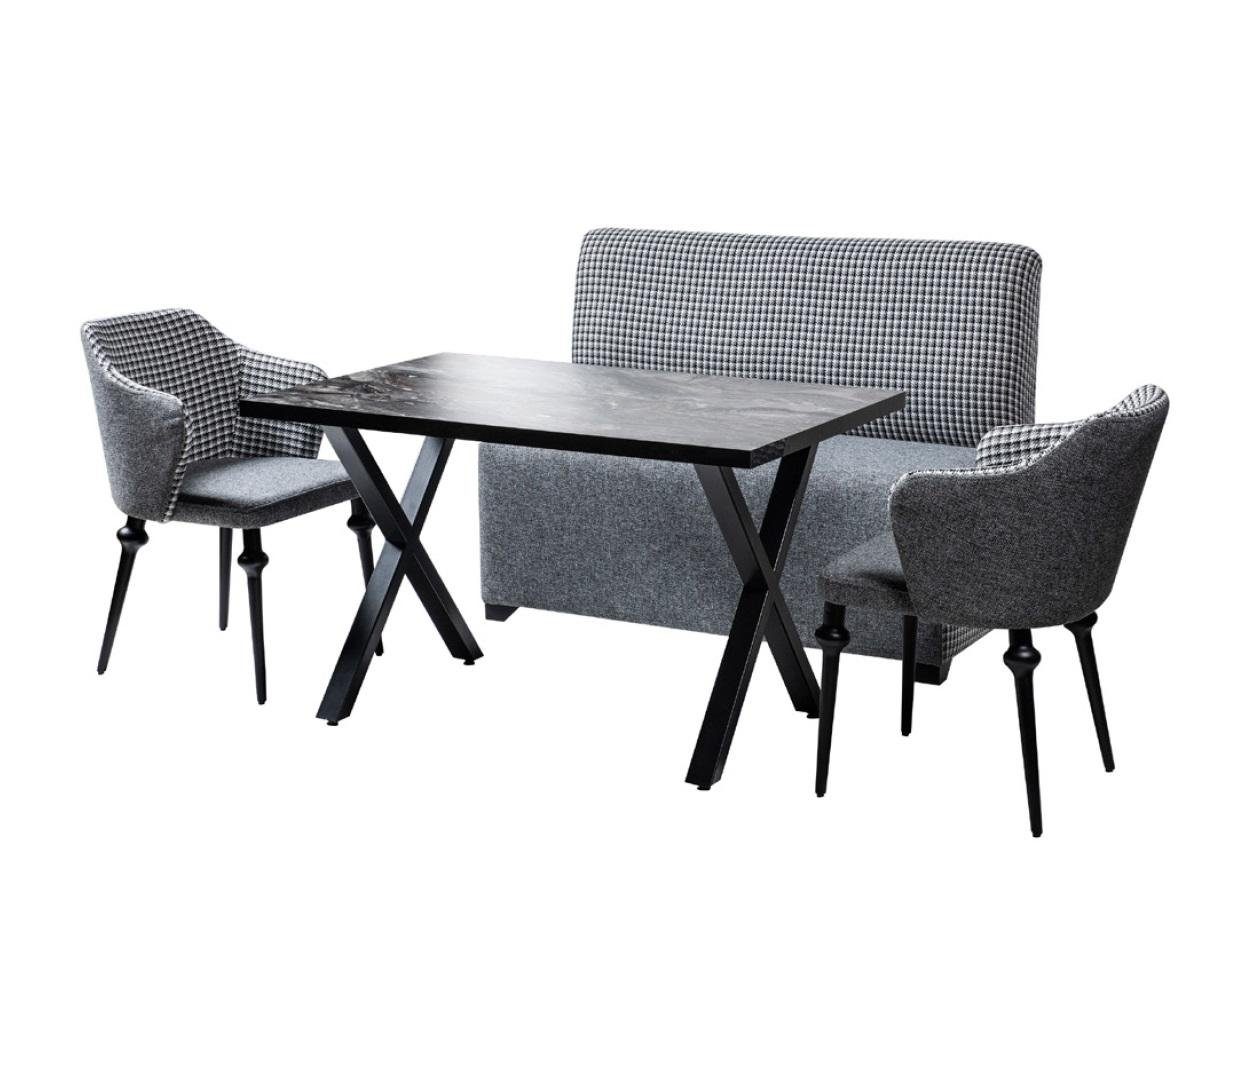 JVmoebel Essgruppe, Esszimmer Garnitur Bank Sofa Tisch 2x Sessel Eckbank Küchen Ess Gruppe